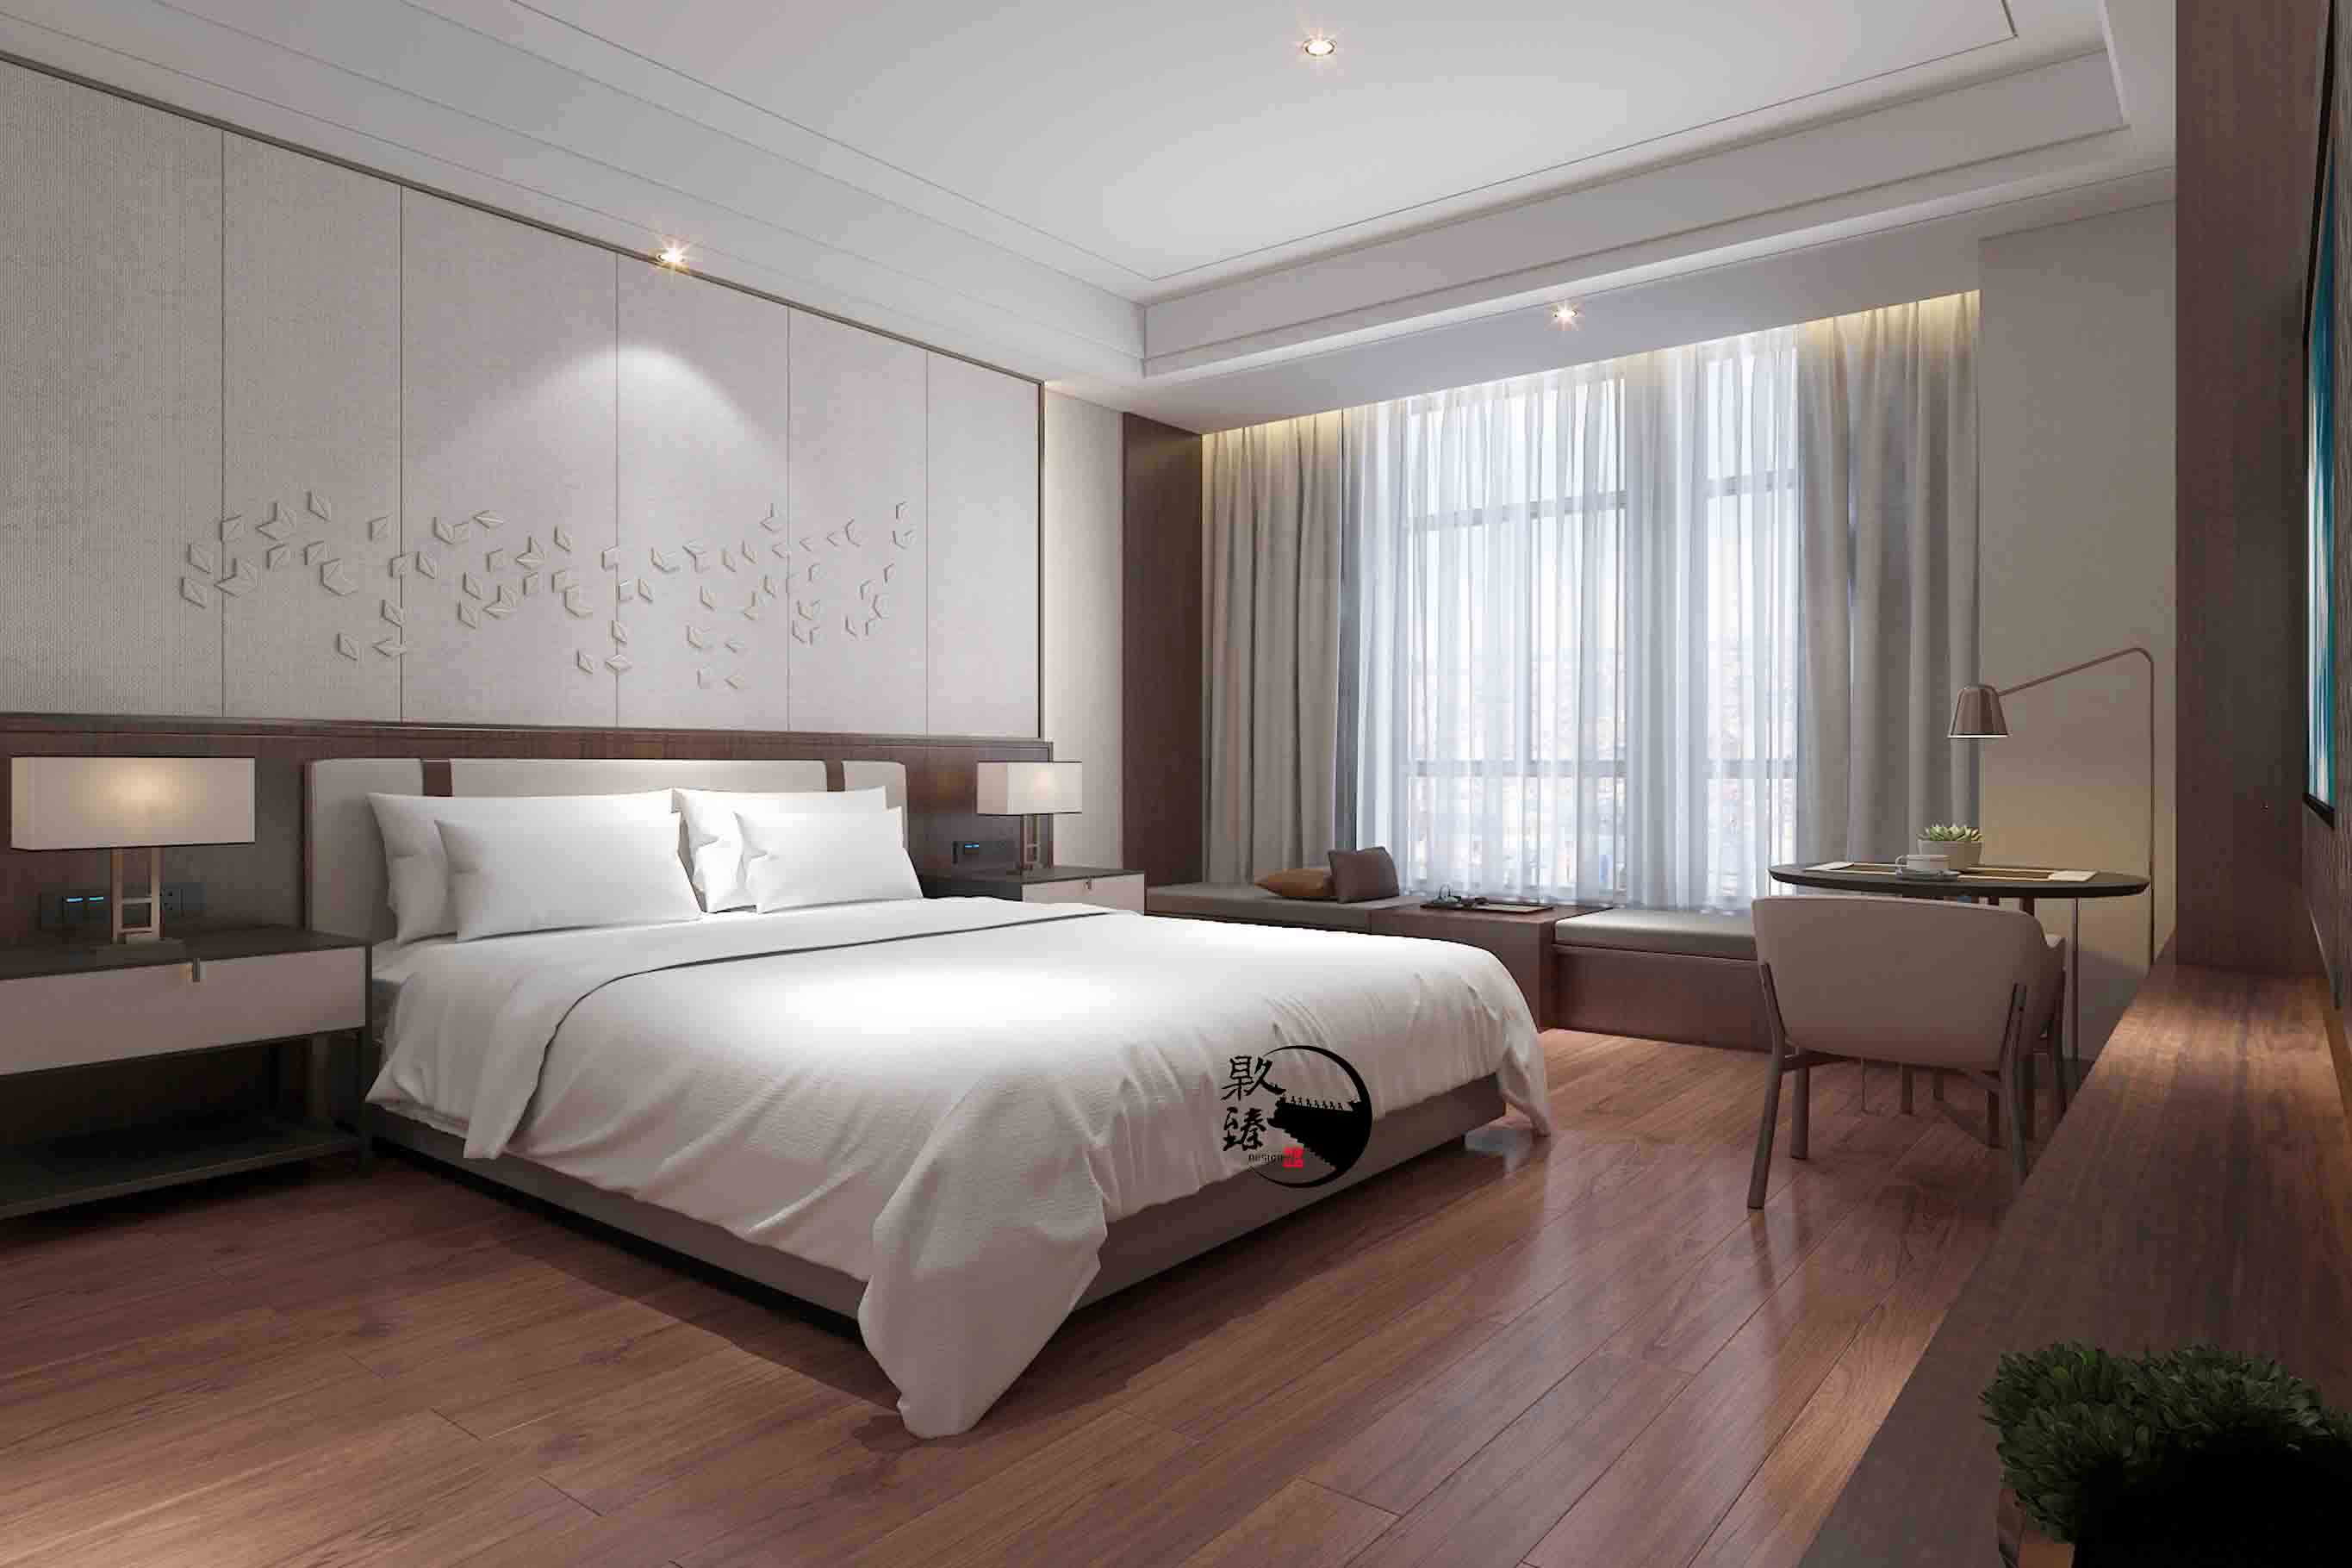 惠农米素酒店设计|满足客户对舒适和安静的需求